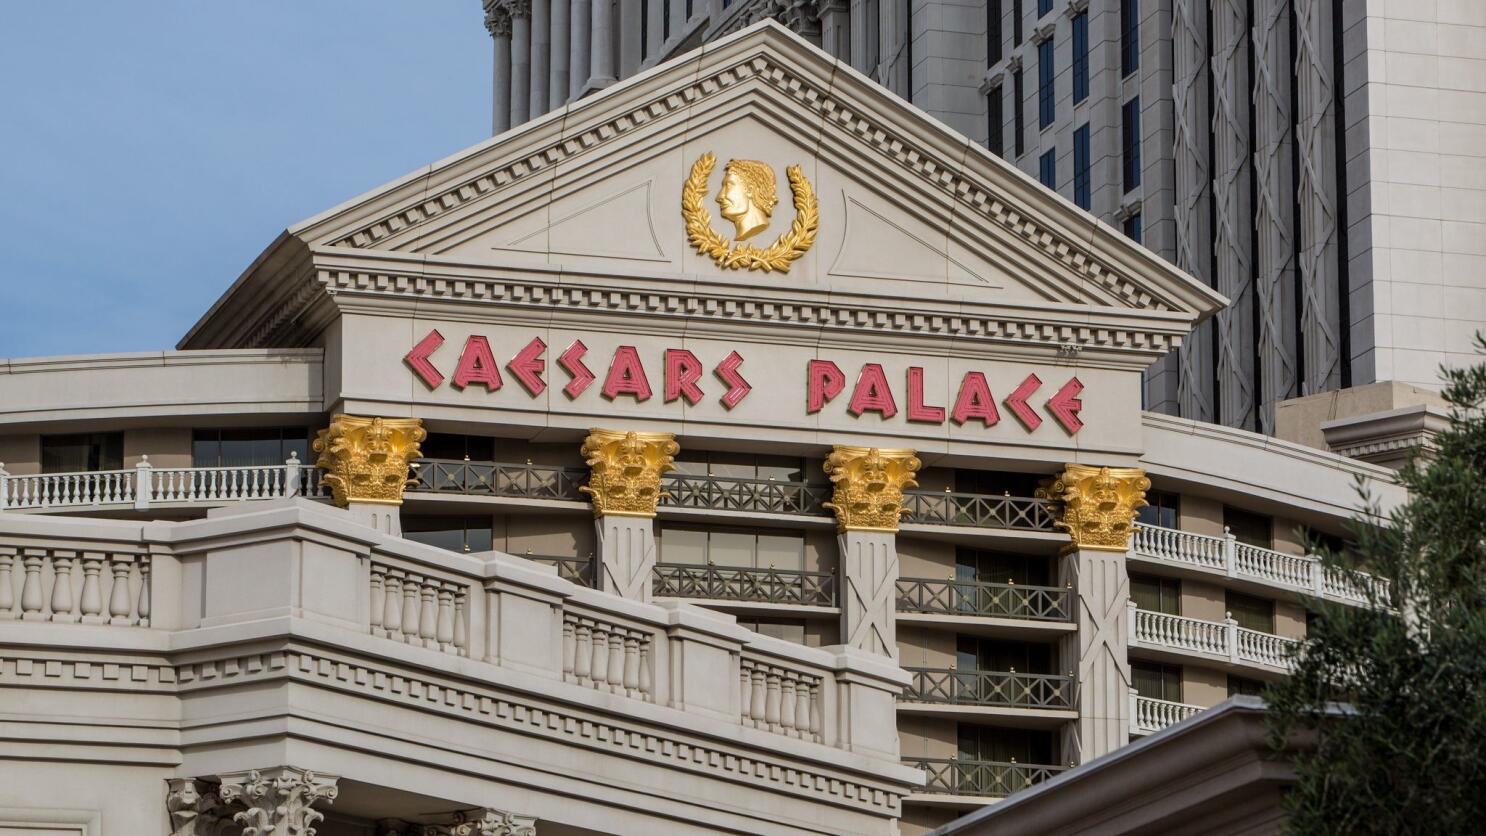 Paris Las Vegas Resort & Casino - Best Hotel Prices In Clark County